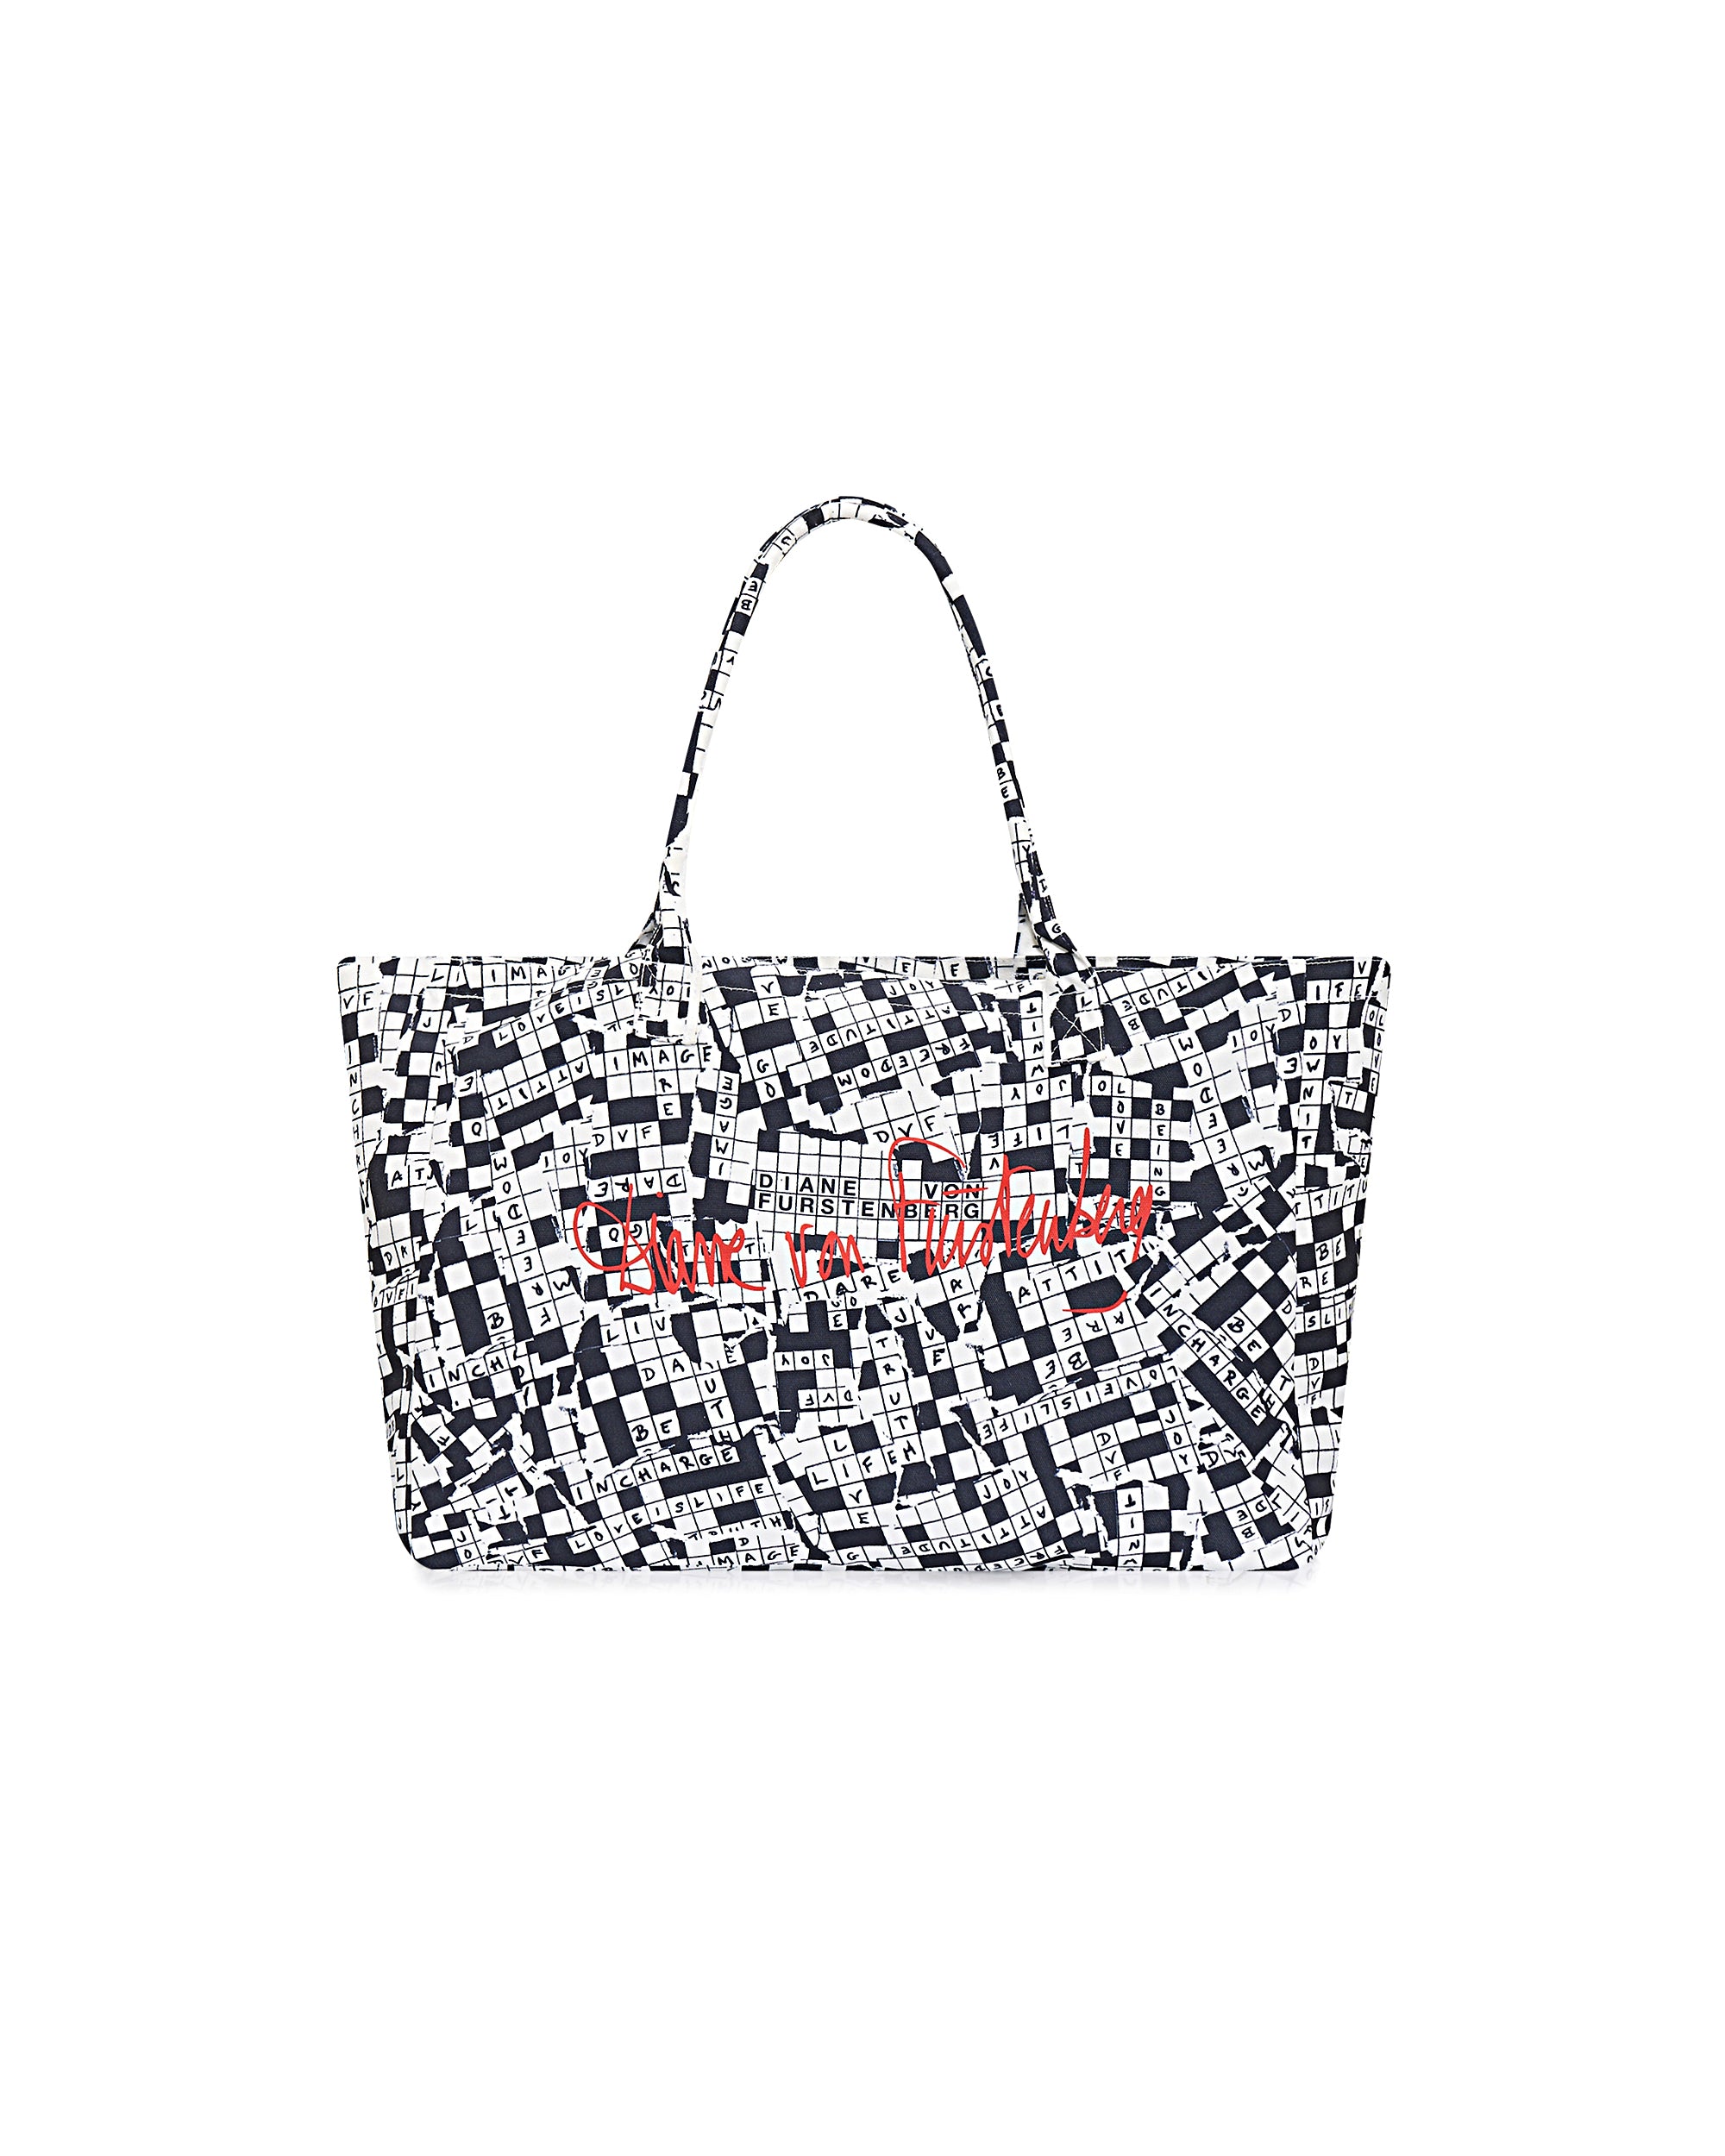 Handbags – Diane von Furstenberg